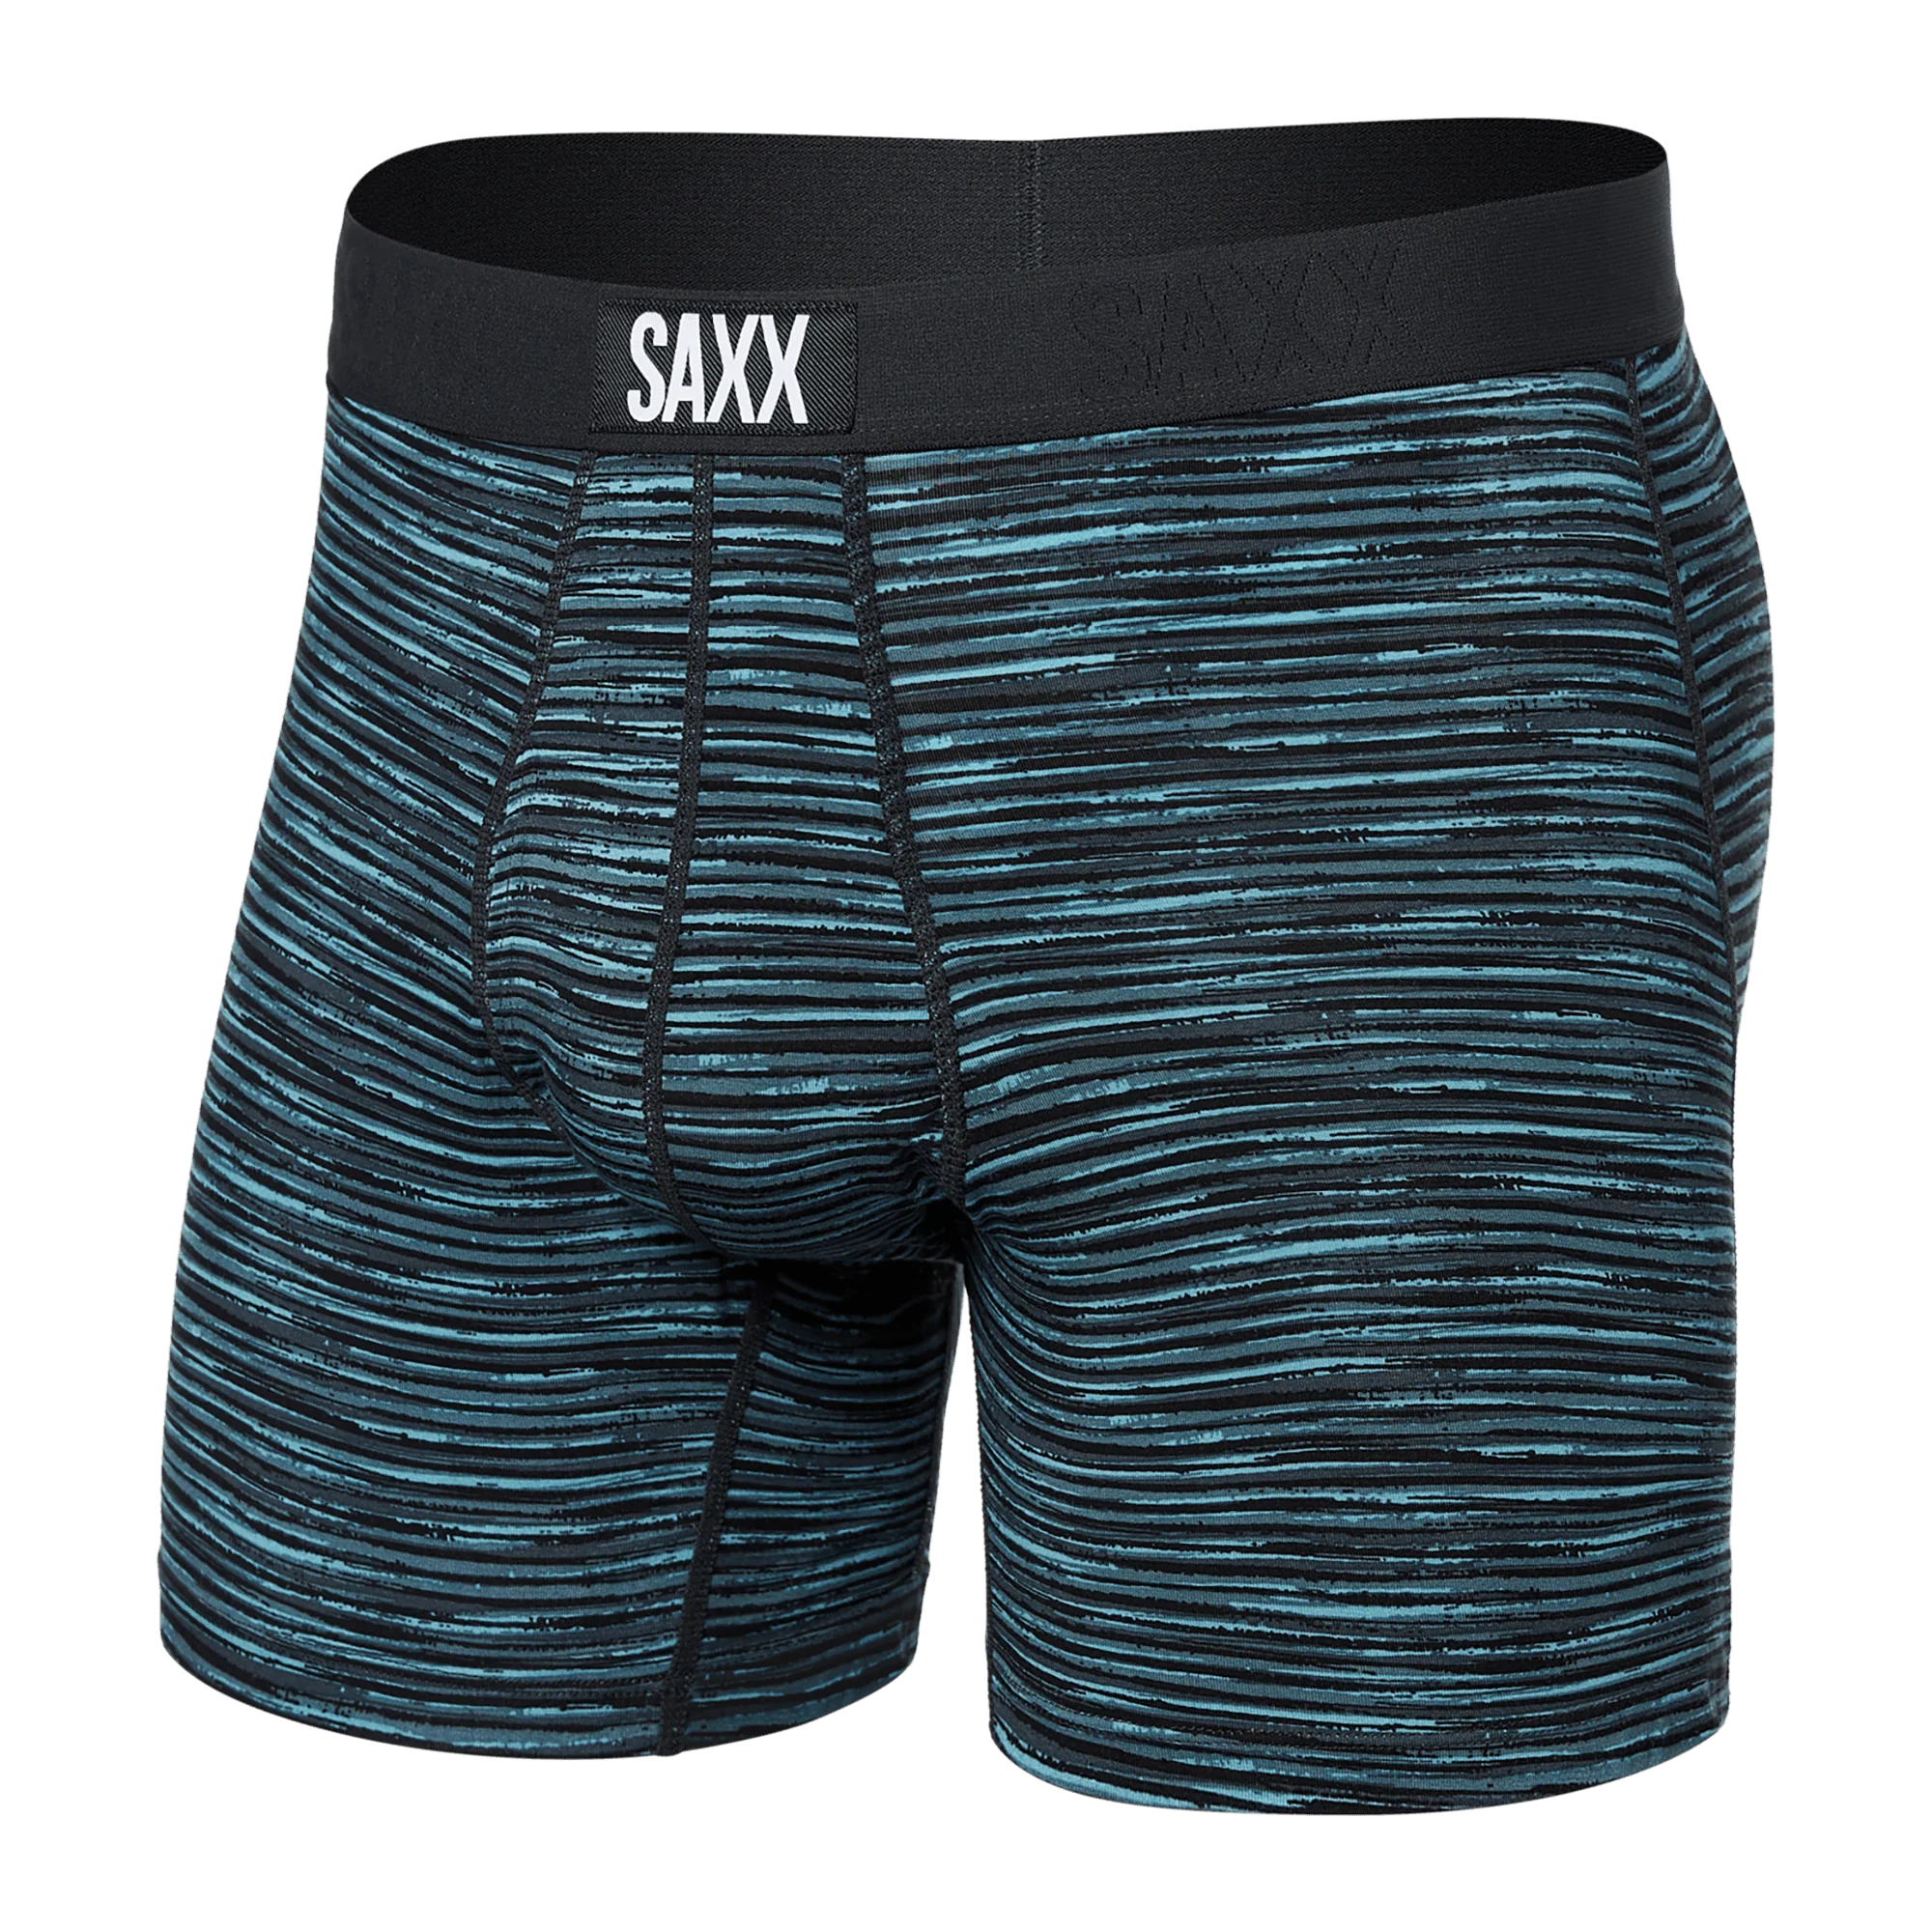 'SAXX Ultra Super Soft Boxer Brief - Spacedye Stripe' in 'Grey Multi' colour